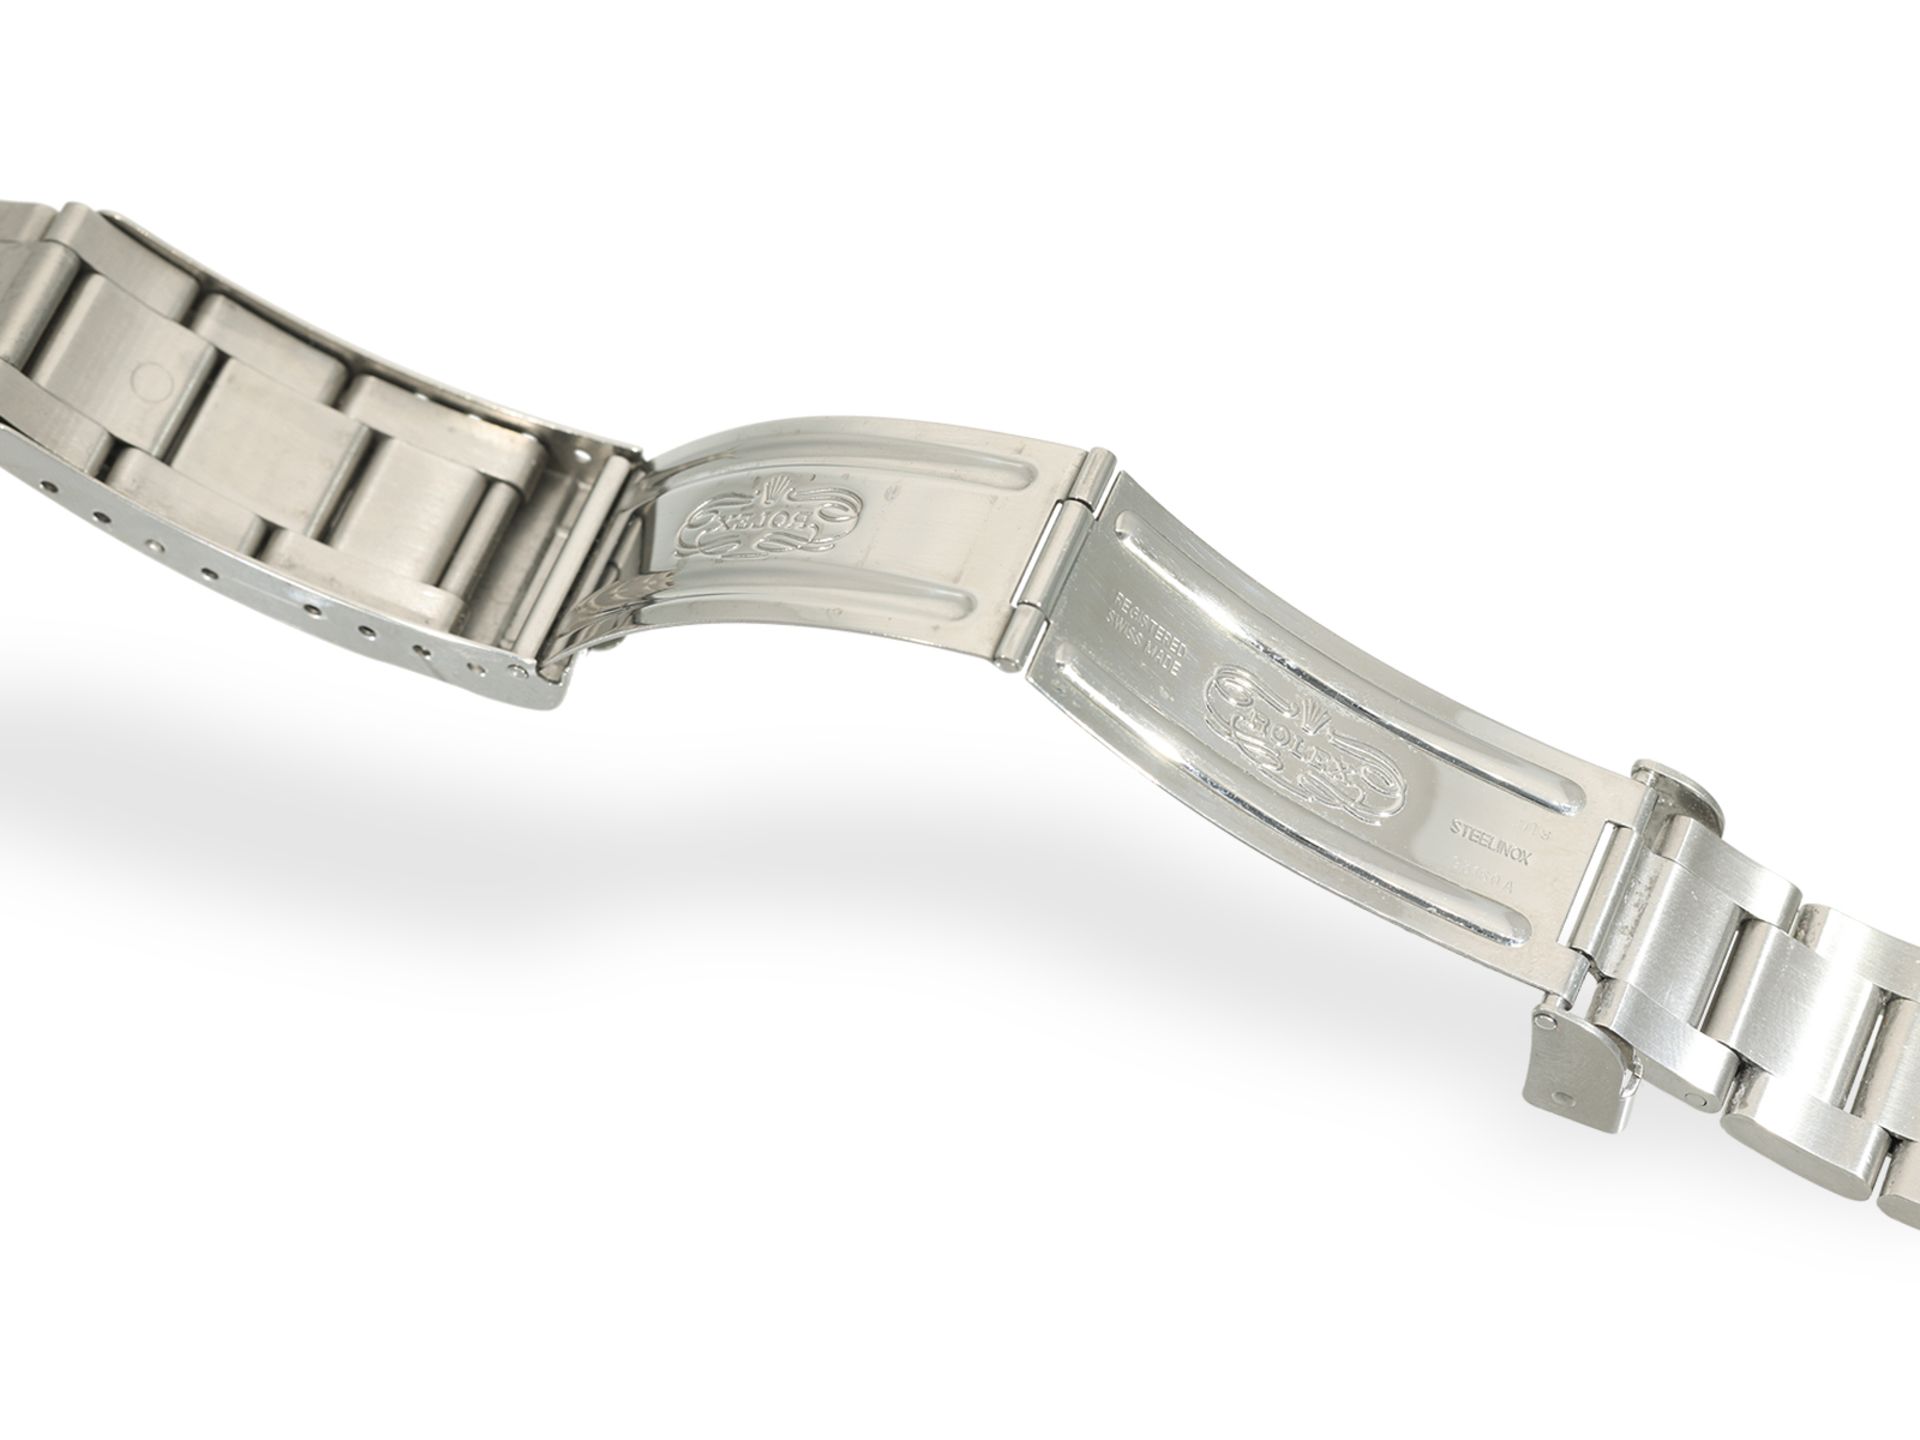 Armbanduhr: Rolex Sea-Dweller REF. 16600, Stahl, Box & Papiere, 2002/2003 - Bild 3 aus 10